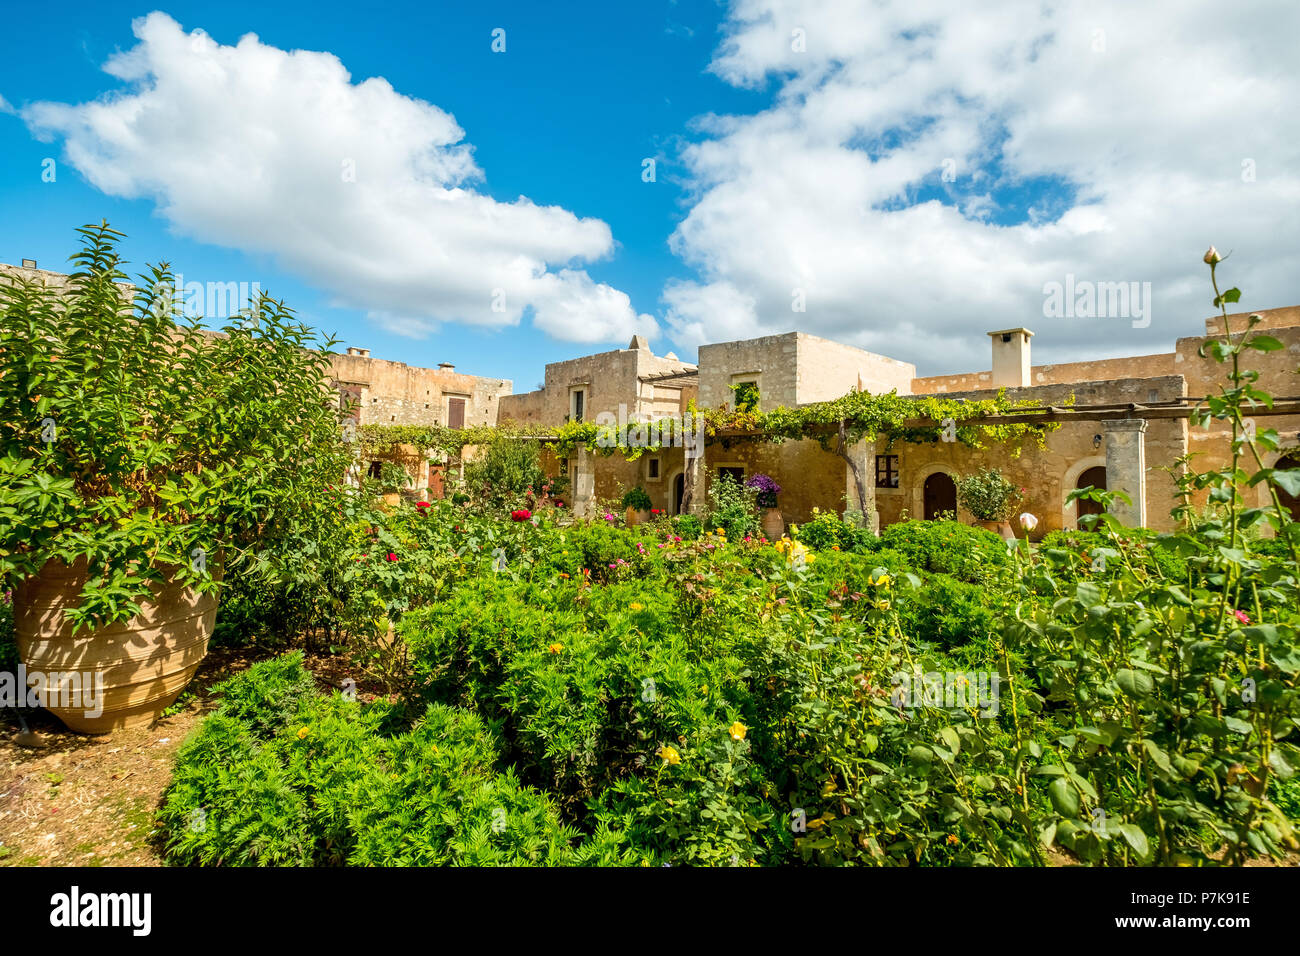 Klostergarten, National Monument von Kreta in den Kampf um die Unabhängigkeit, Moni Kloster Arkadi, Kreta, Griechenland, Europa Stockfoto